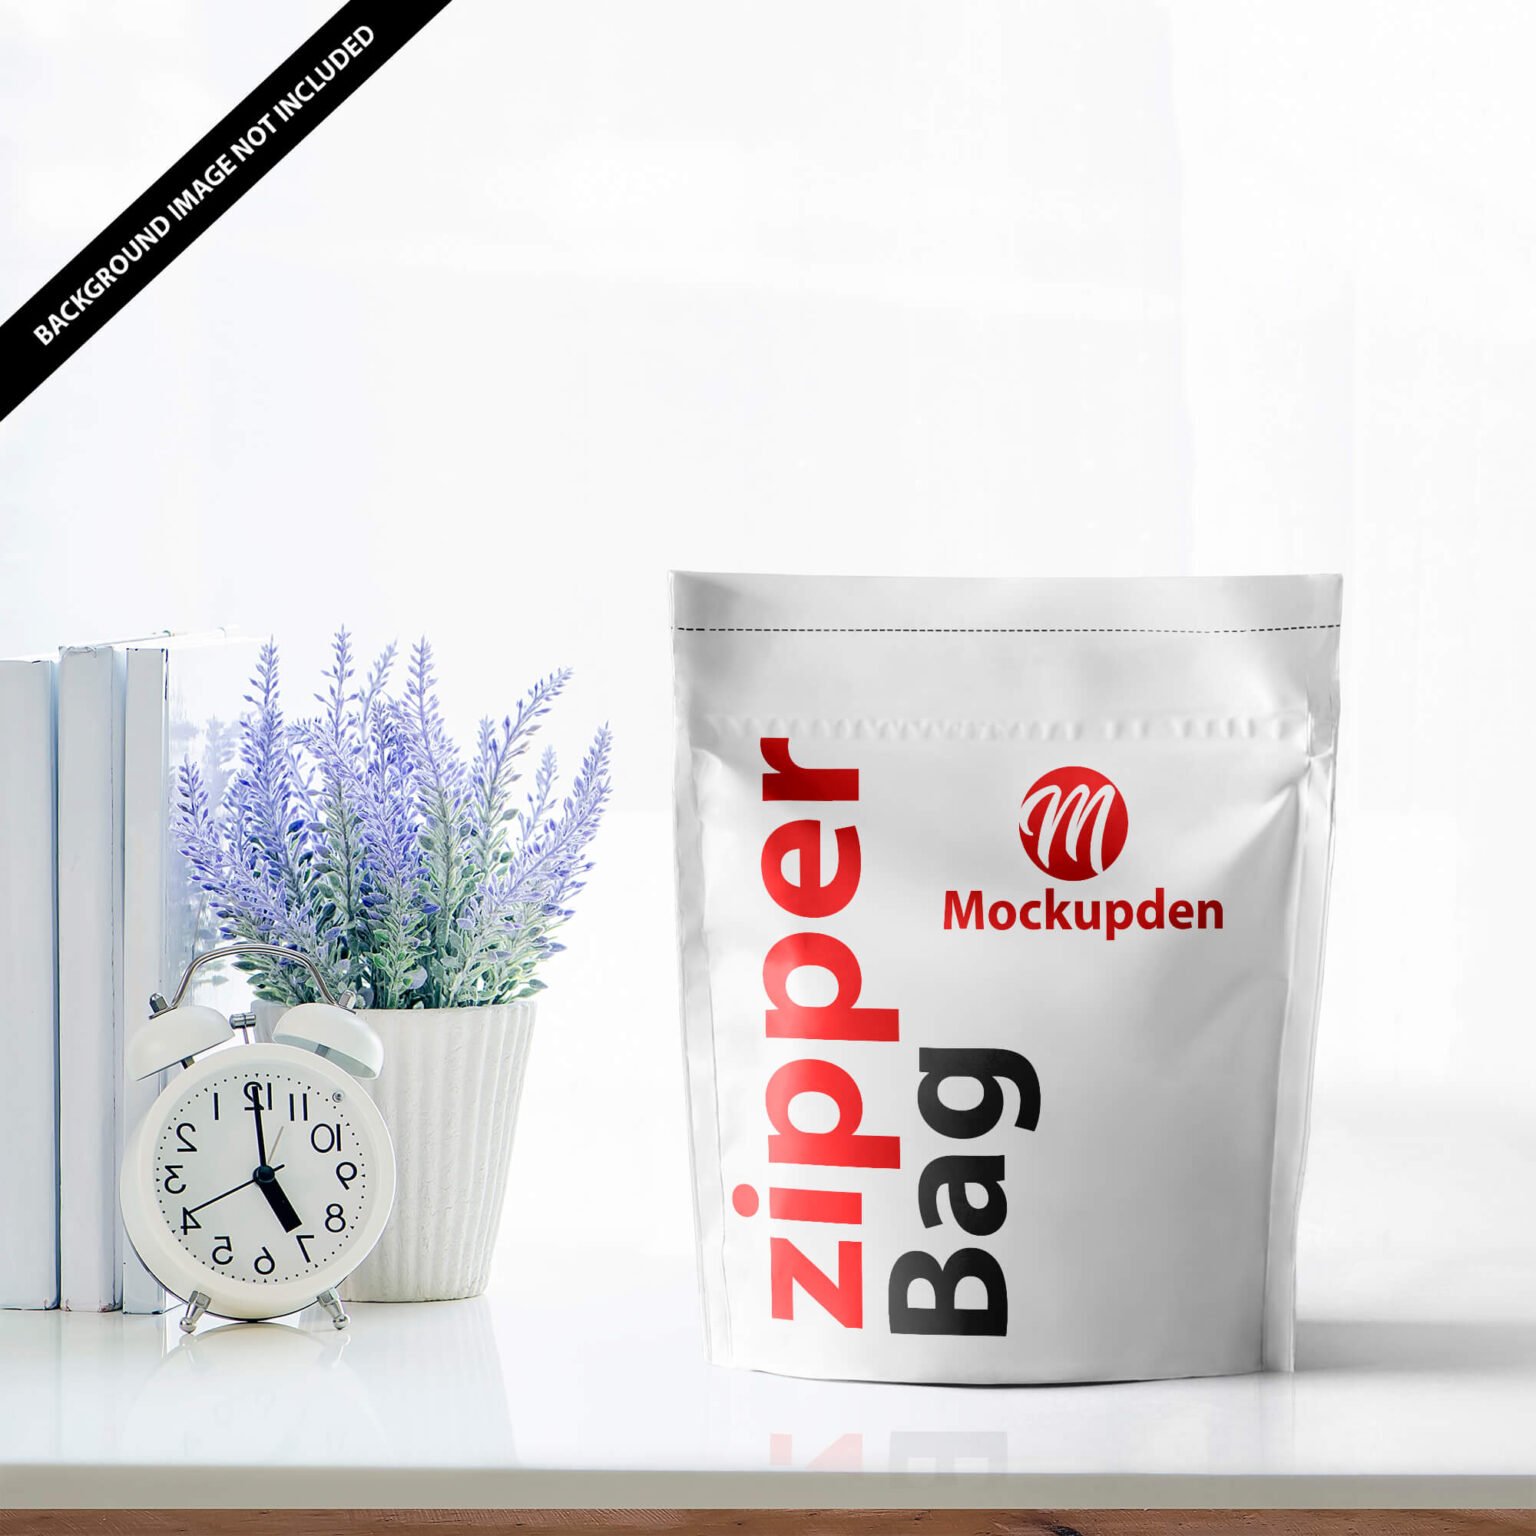 Download Free Zipper Bag Mockup Vol 2 PSD Template - Mockup Den